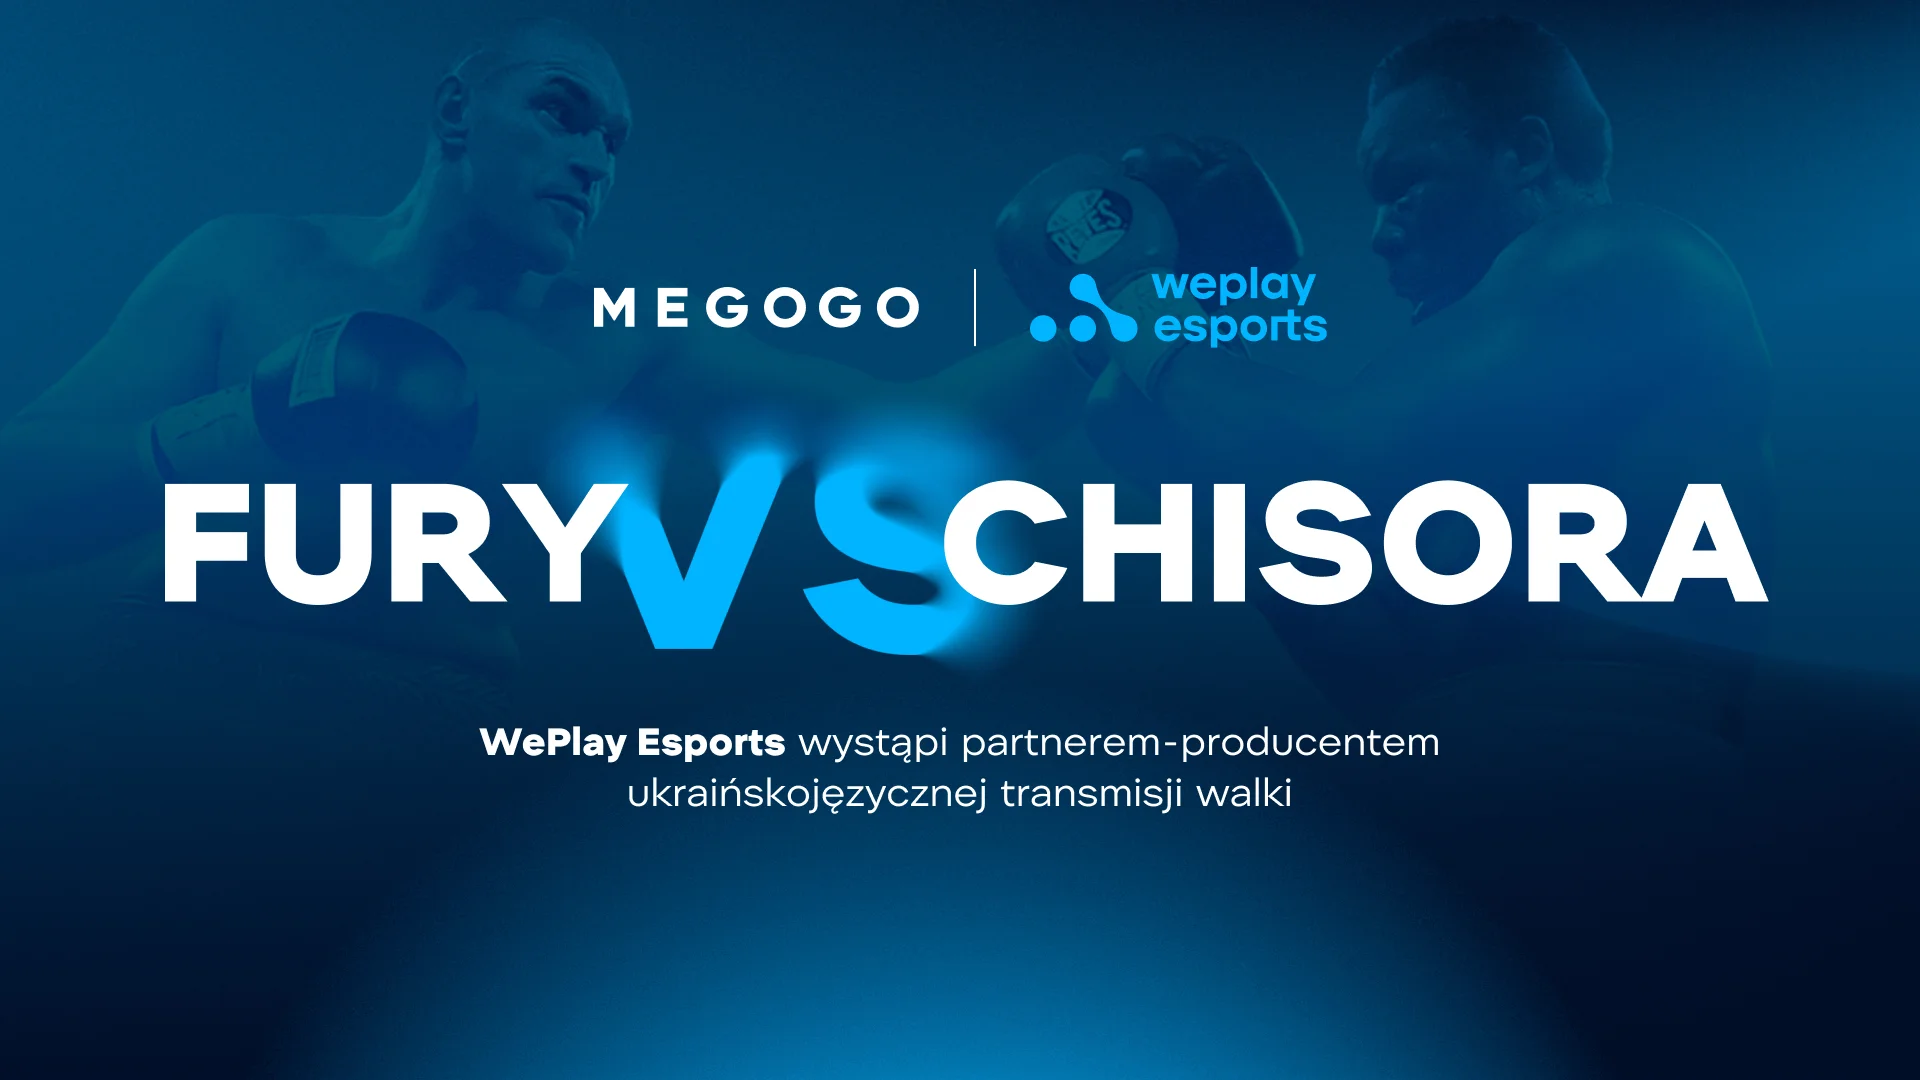 WePlay Esports wystąpi partnerem-producentem ukraińskojęzycznej transmisji walki Fury - Chisora na MEGOGO. Obraz: WePlay Holding